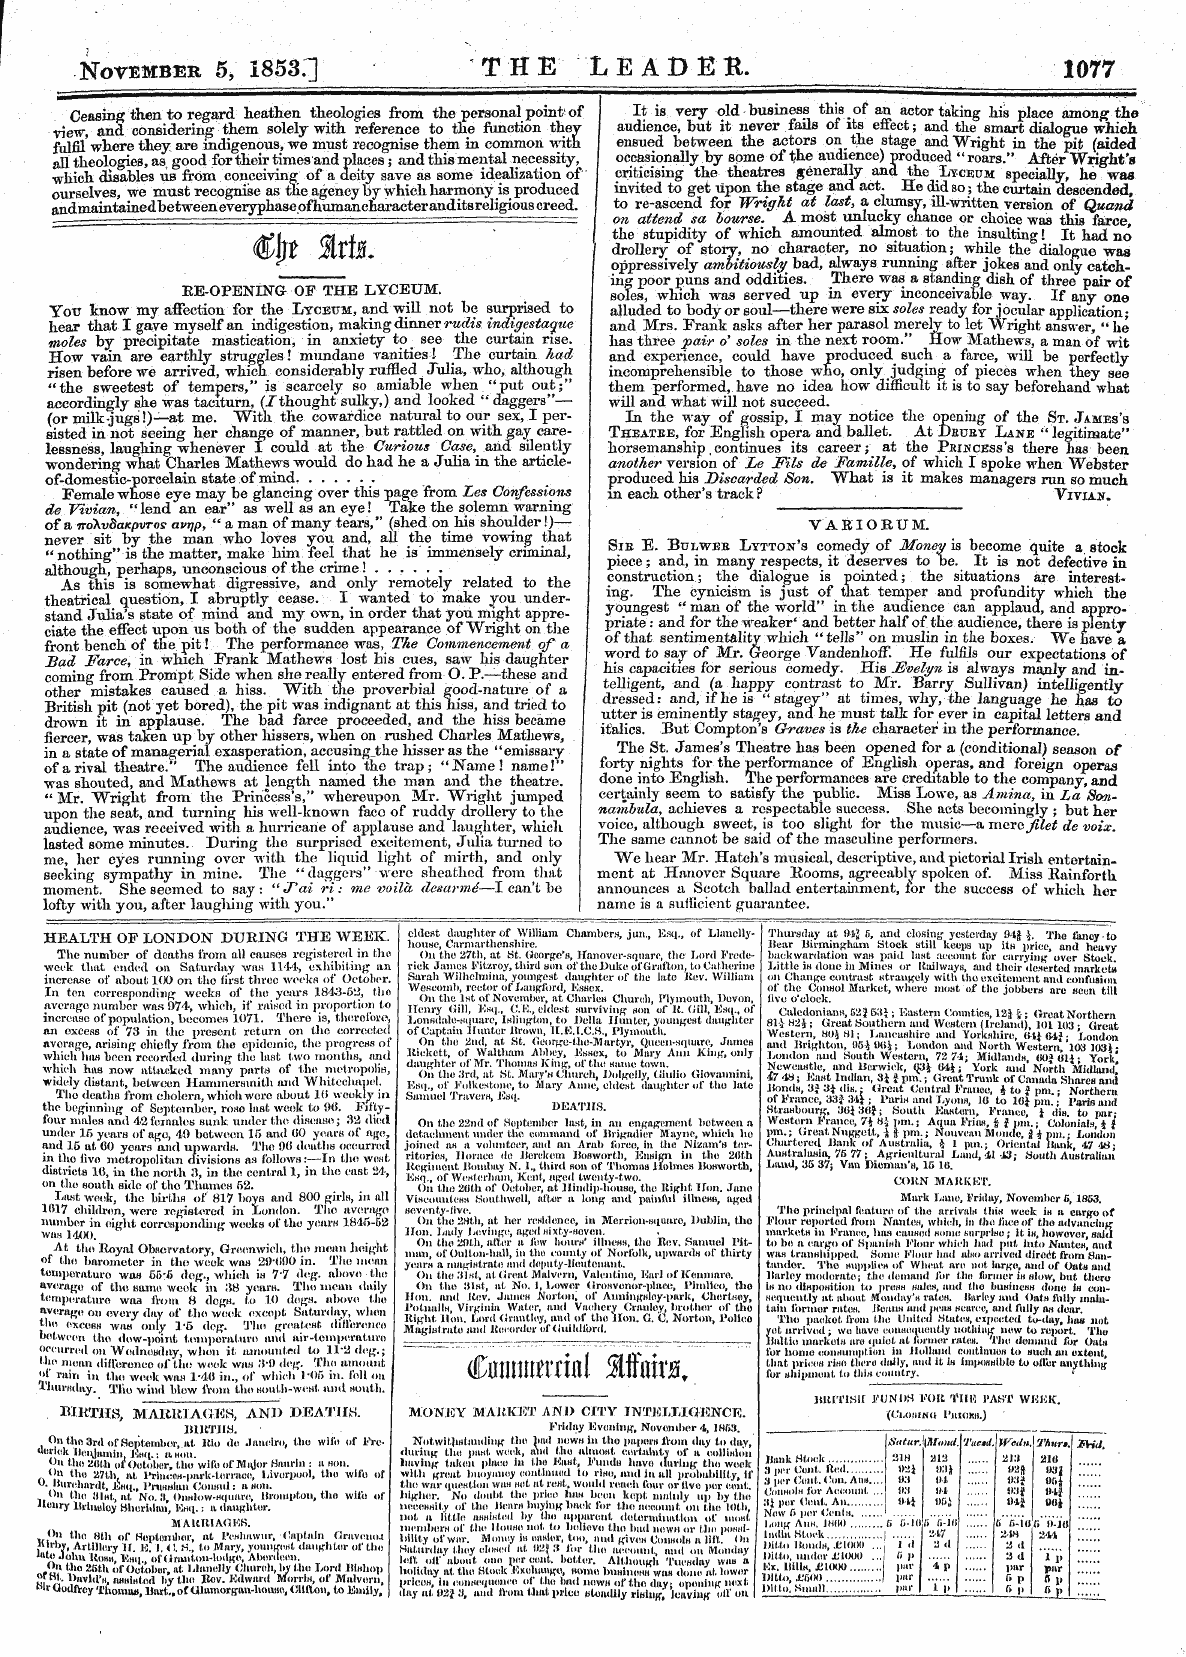 Leader (1850-1860): jS F Y, Country edition - Cniitiiwrriiil Mnira.